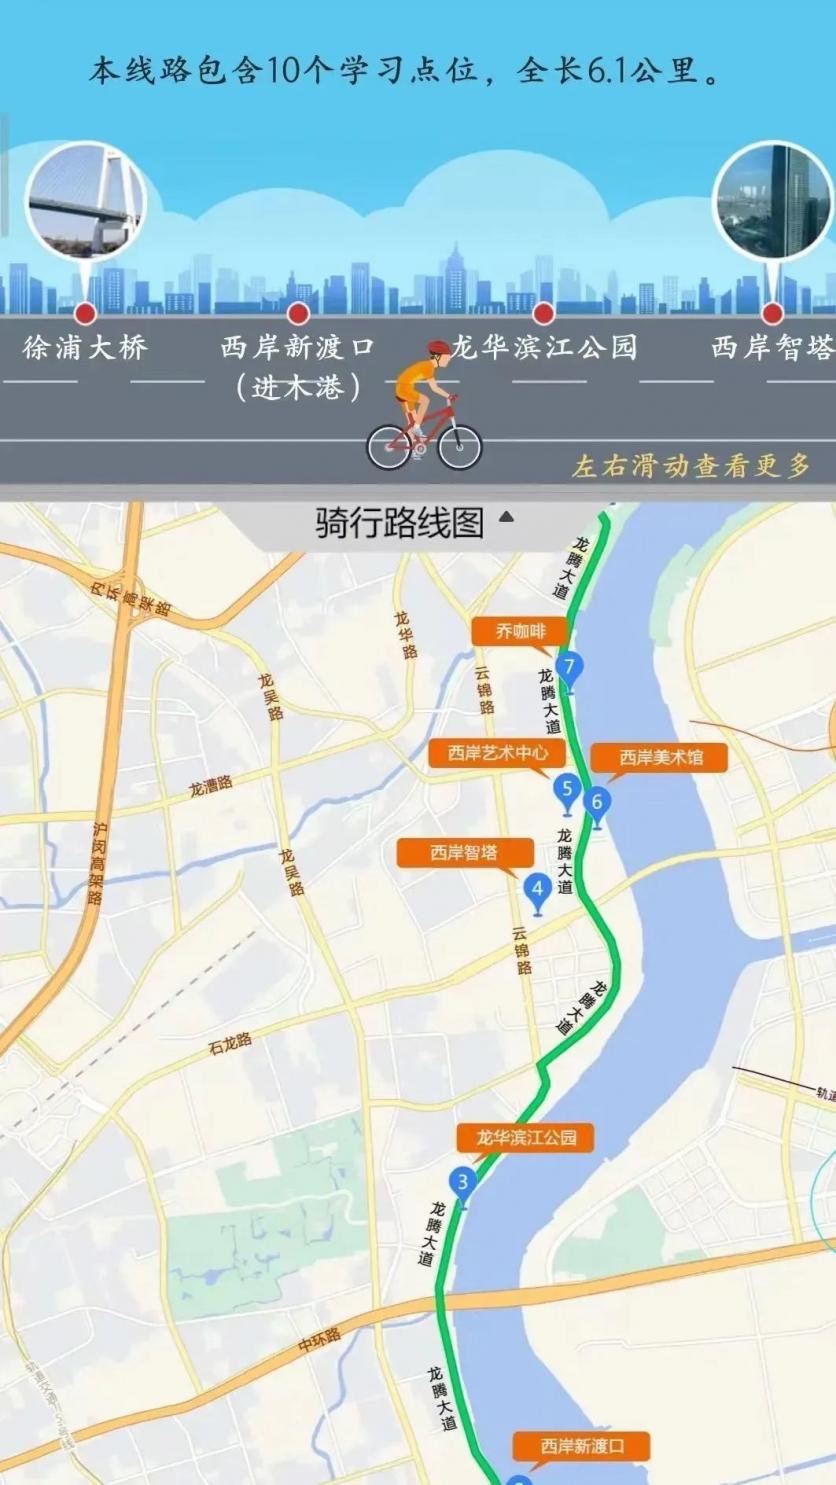 上海徐汇区有哪些值得骑行路线？下面这6条人文行走主题骑行路线不容错过